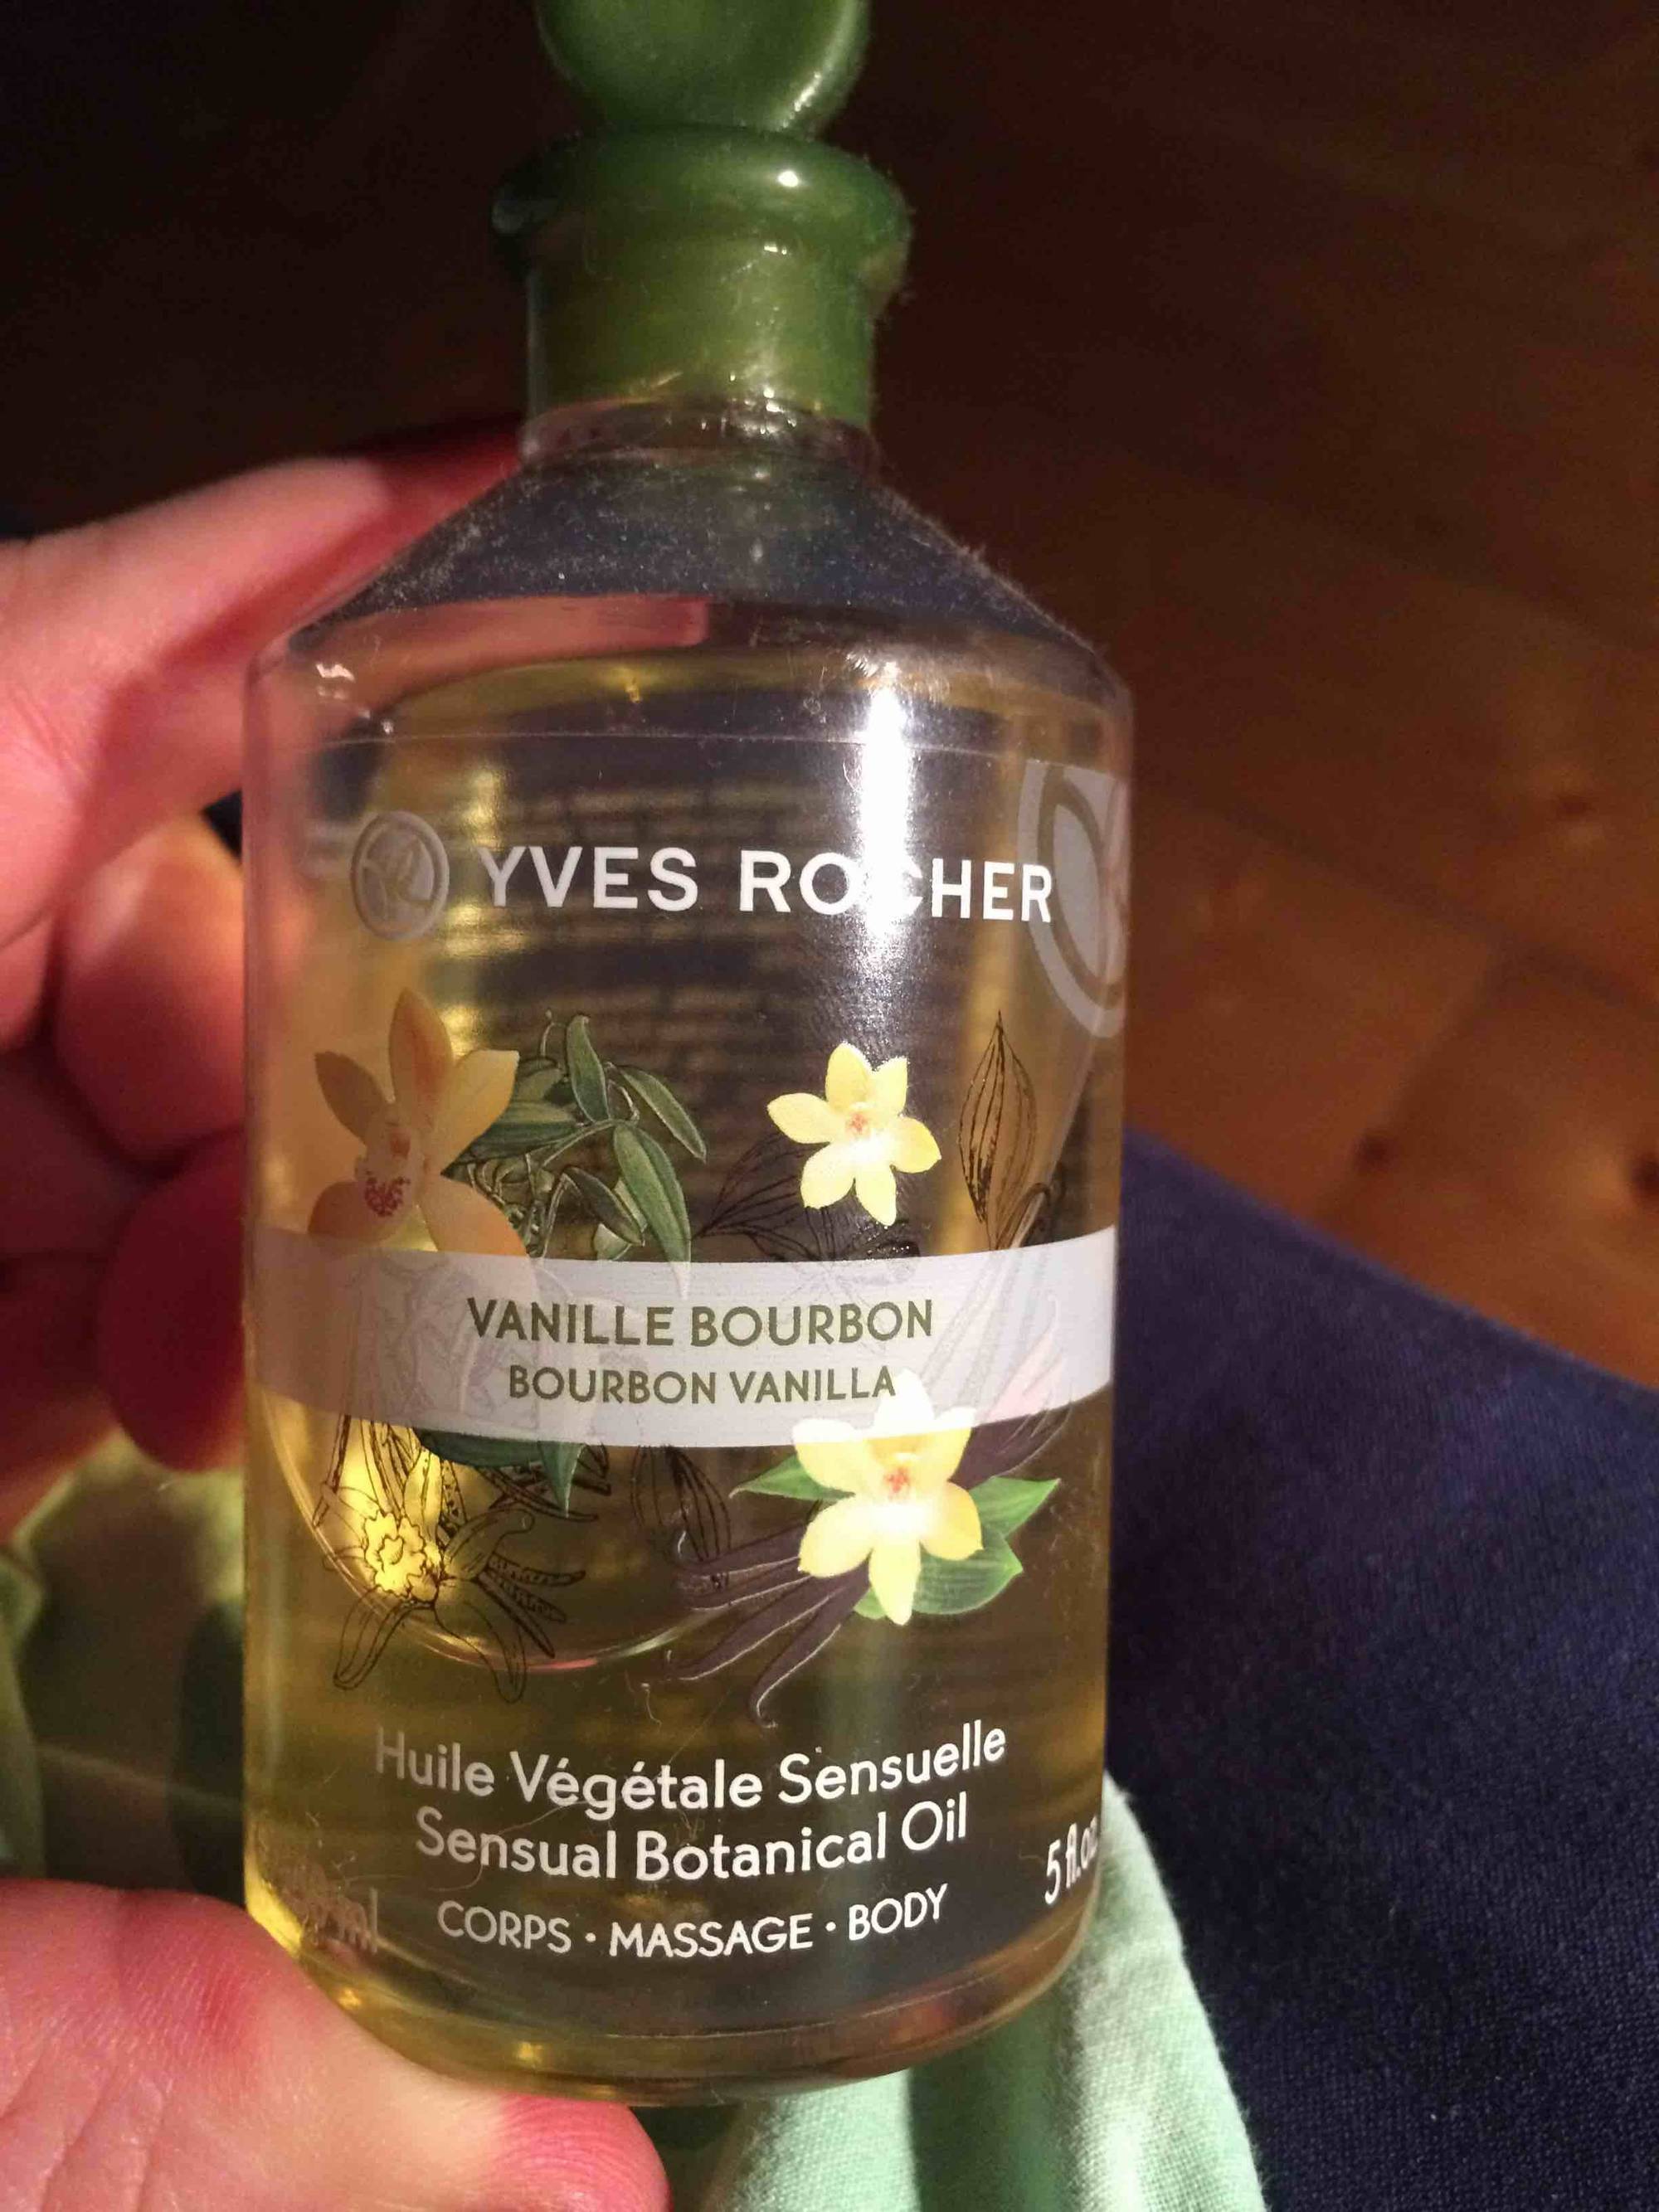 YVES ROCHER - Vanille bourbon - Huile végétale sensuelle